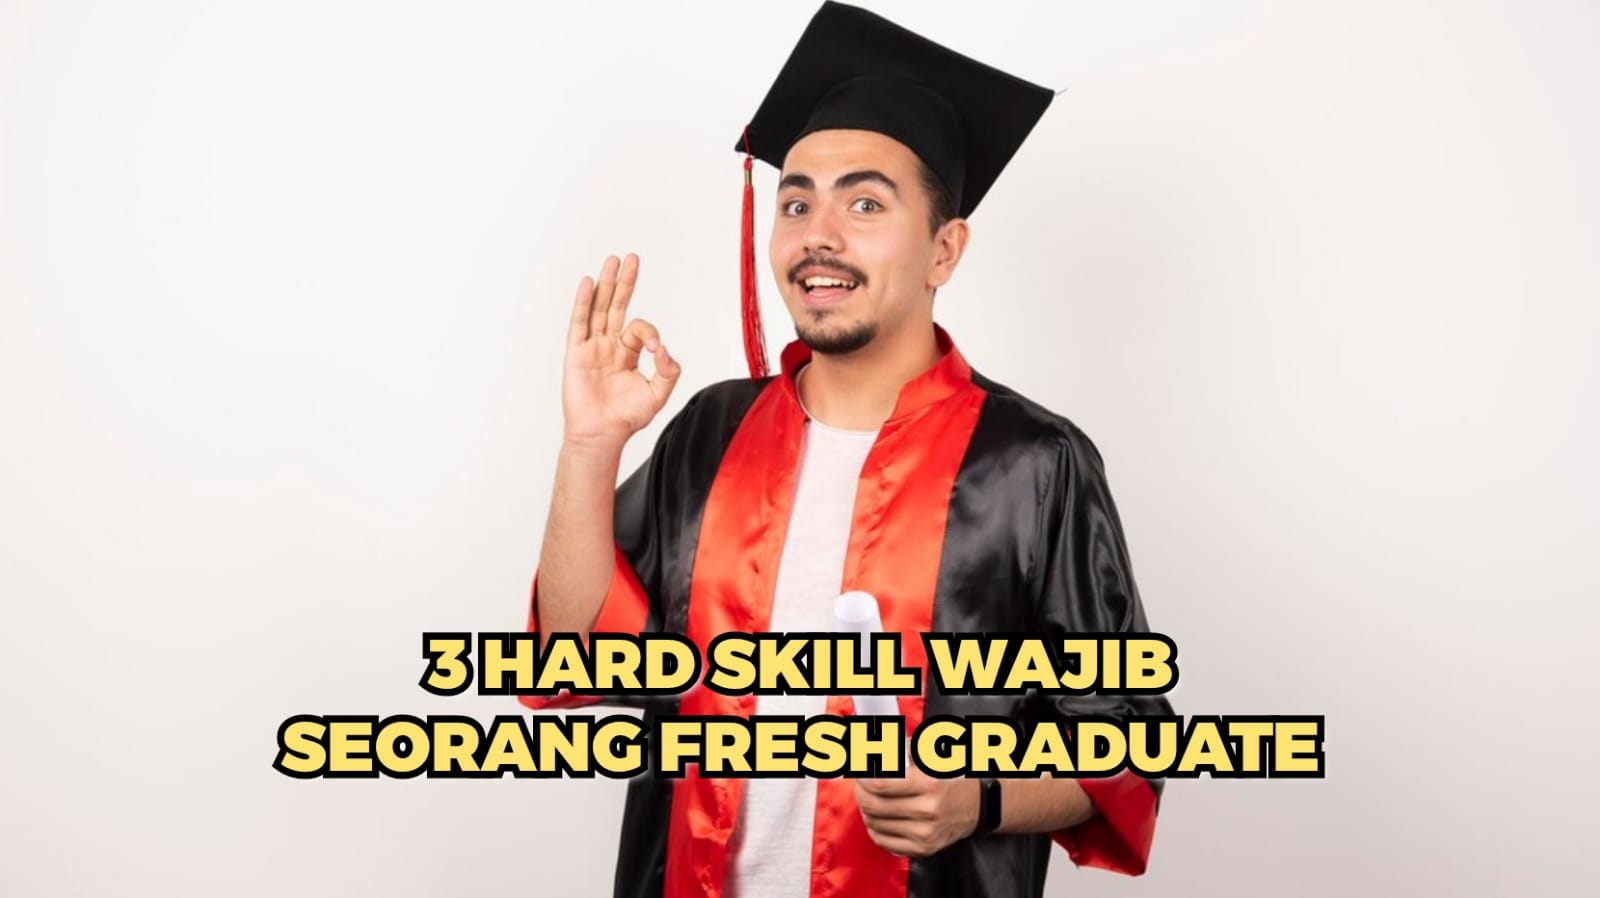 Menyala Abangku! Label Fresh Graduate Lulusan Universitas Terbaik Jadi Sia-Sia Tanpa 3 Hard Skill Dasar Ini 